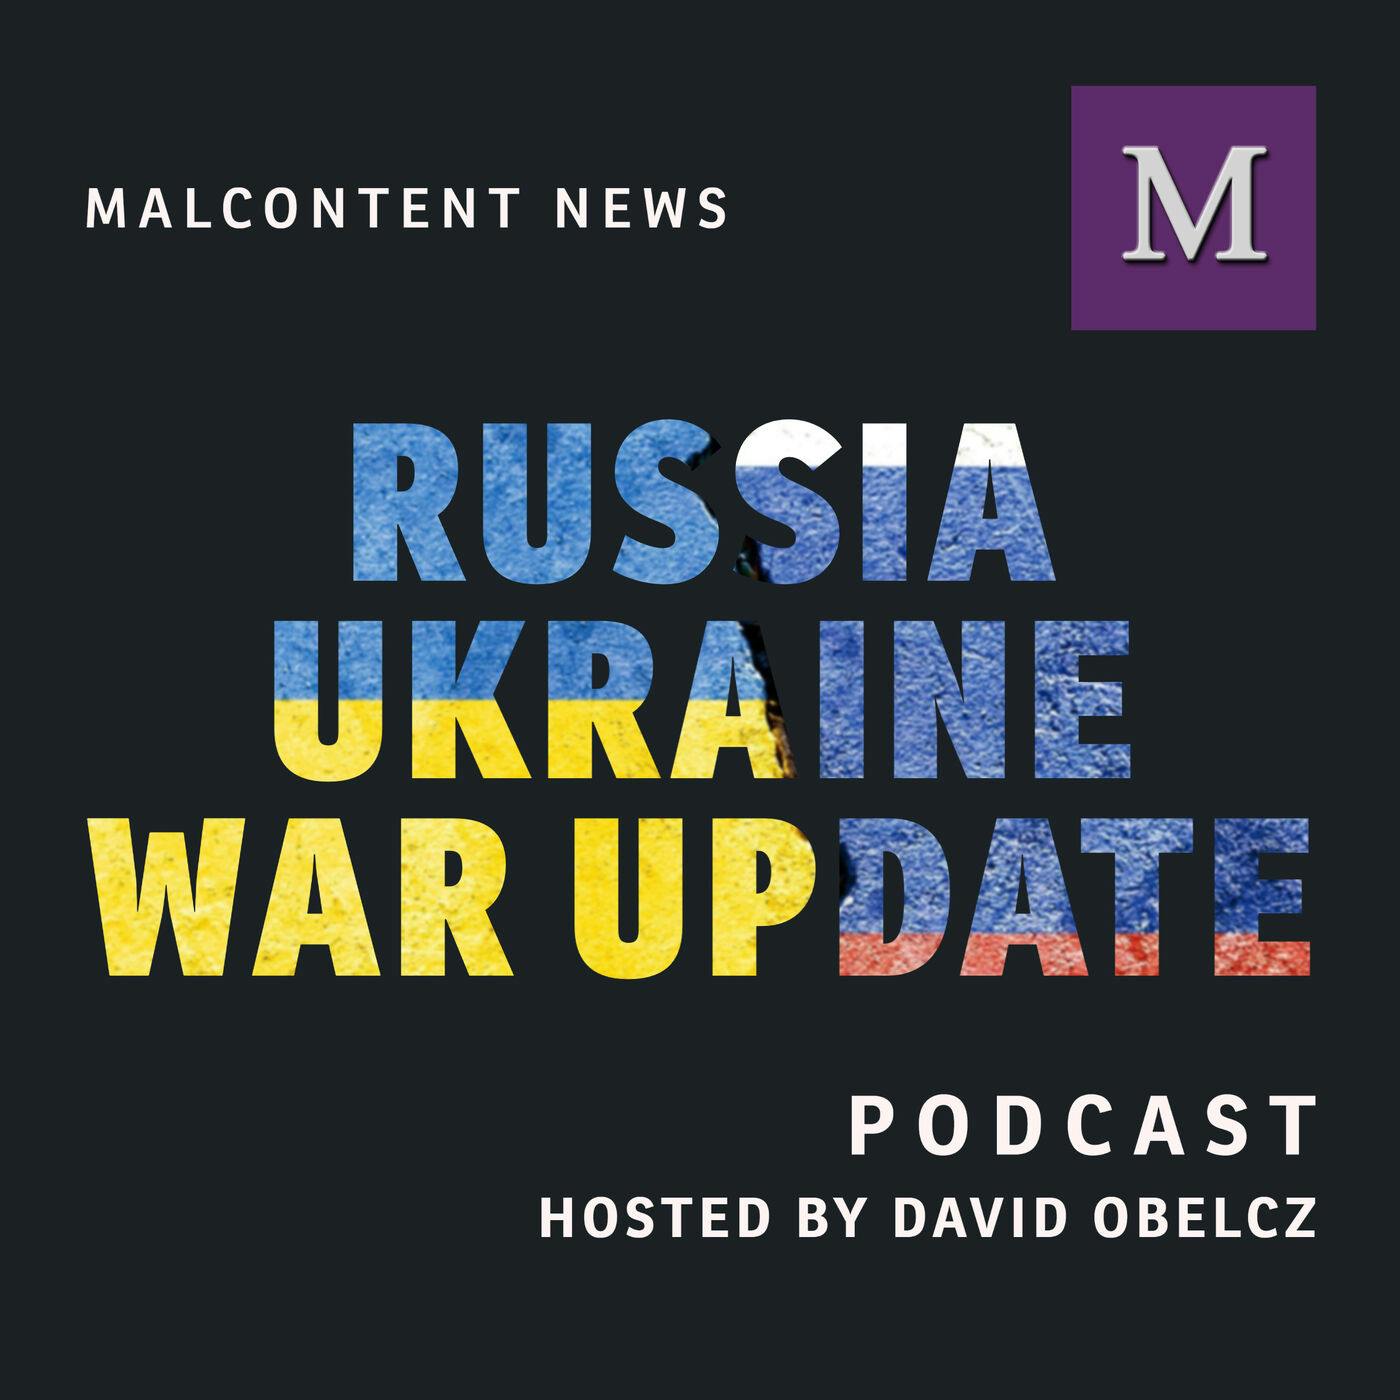 Russia-Ukraine War Week in Review